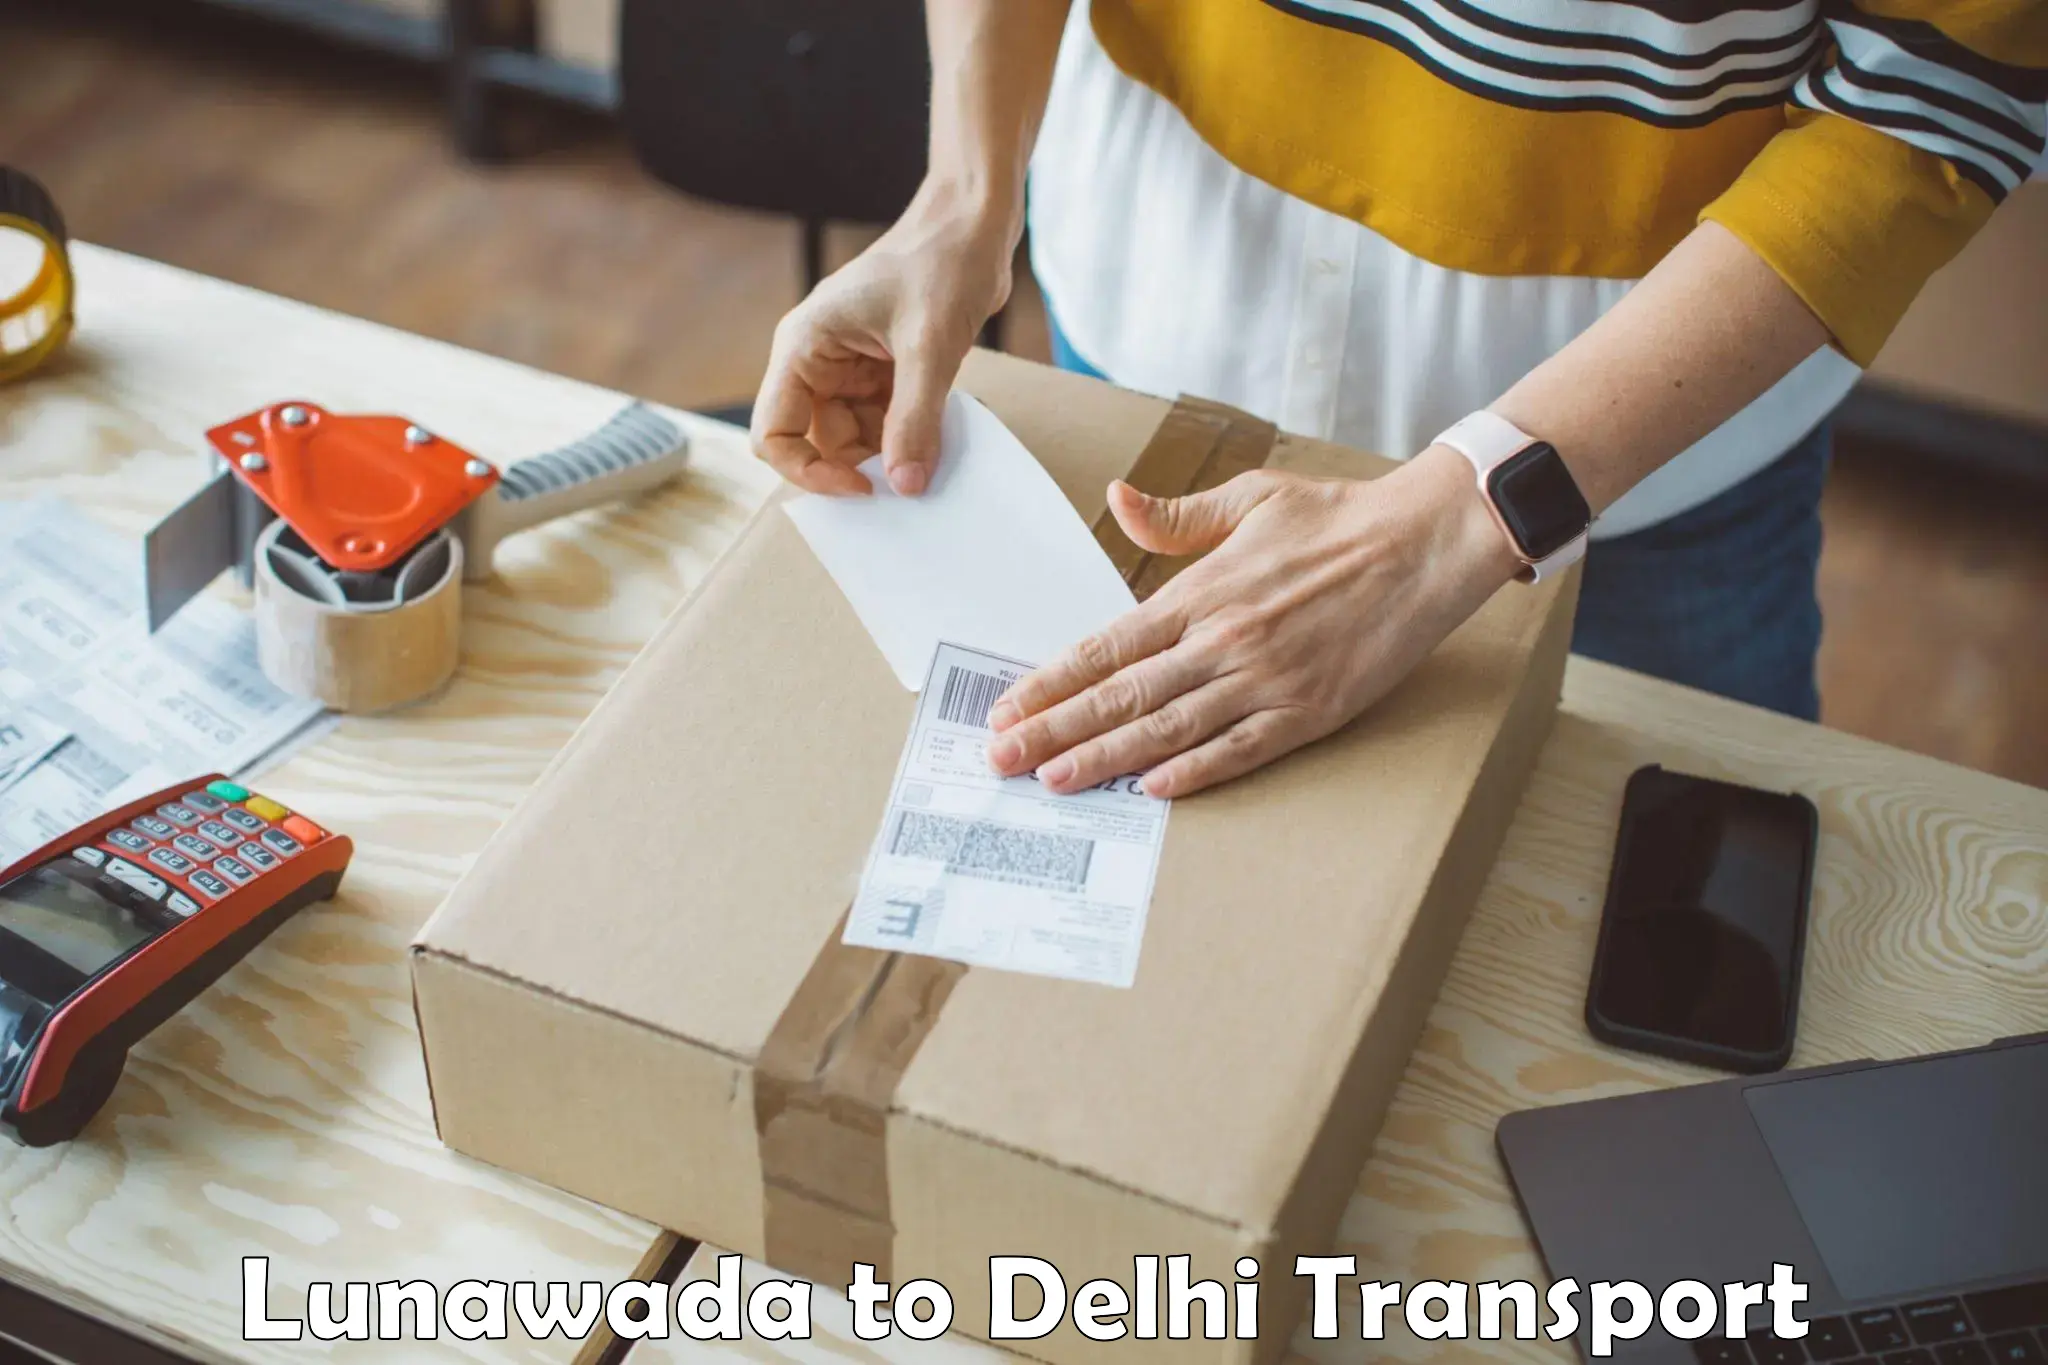 Online transport service Lunawada to NIT Delhi